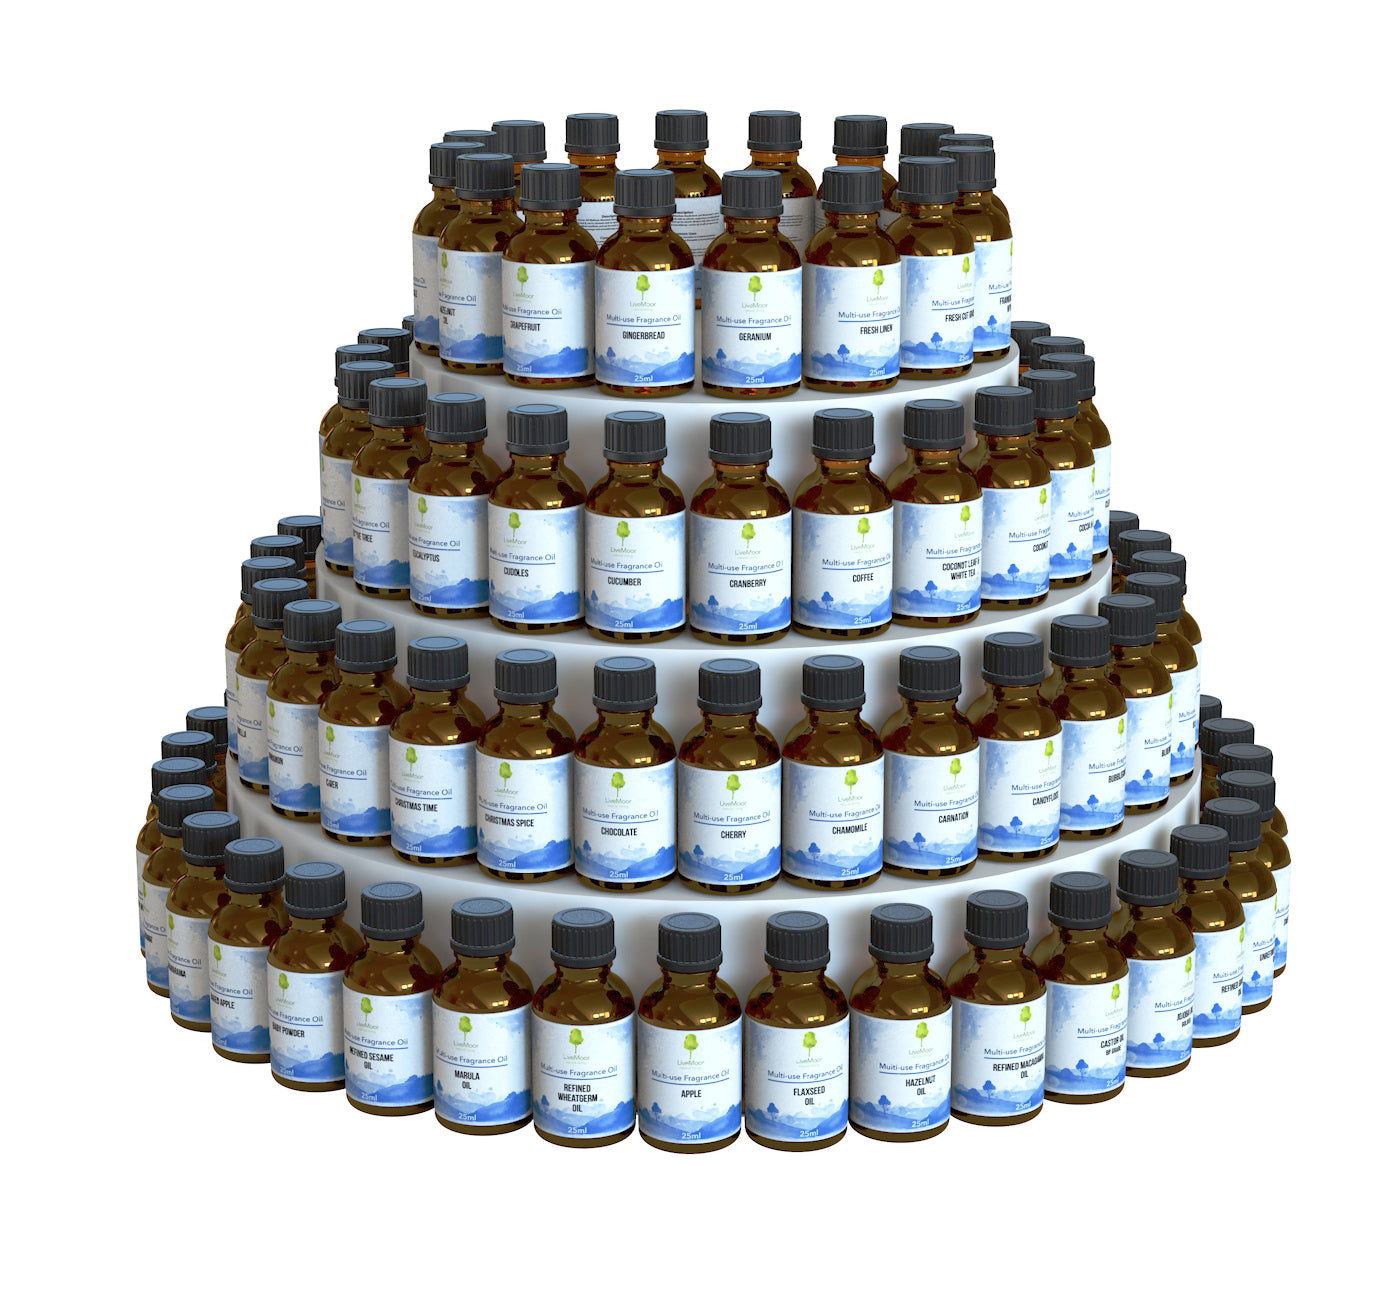 LiveMoor 25ml Fragrance Oils - Over 100 Fragrances - Paraben Free